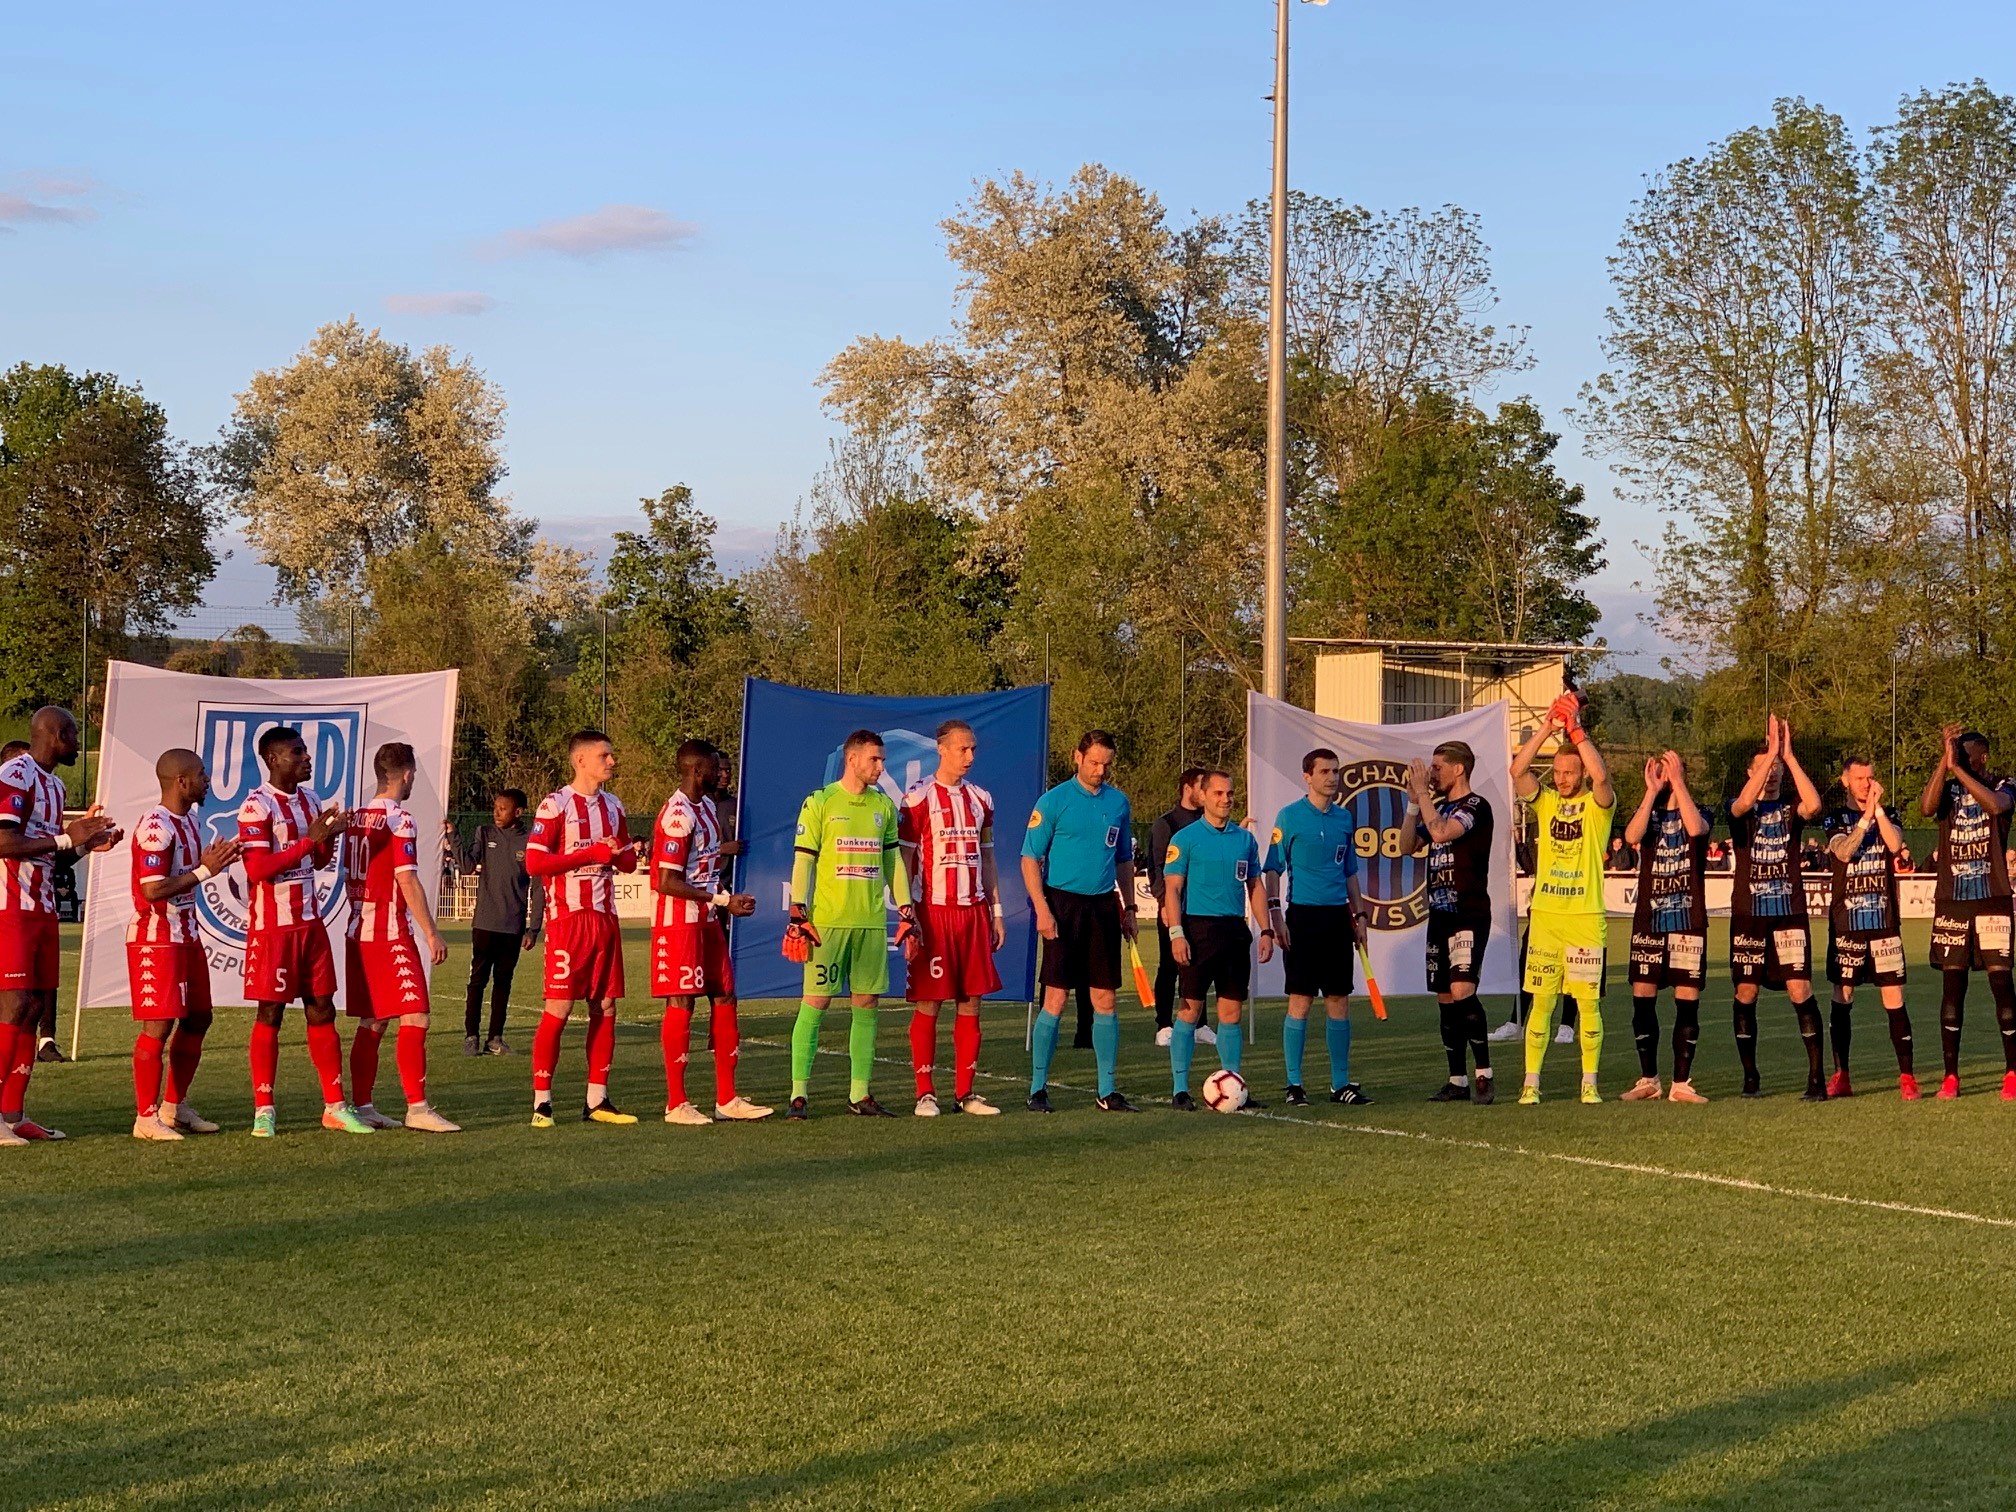 Cap2i renouvelle son partenariat avec le FC Chambly pour la saison 2019-2020.